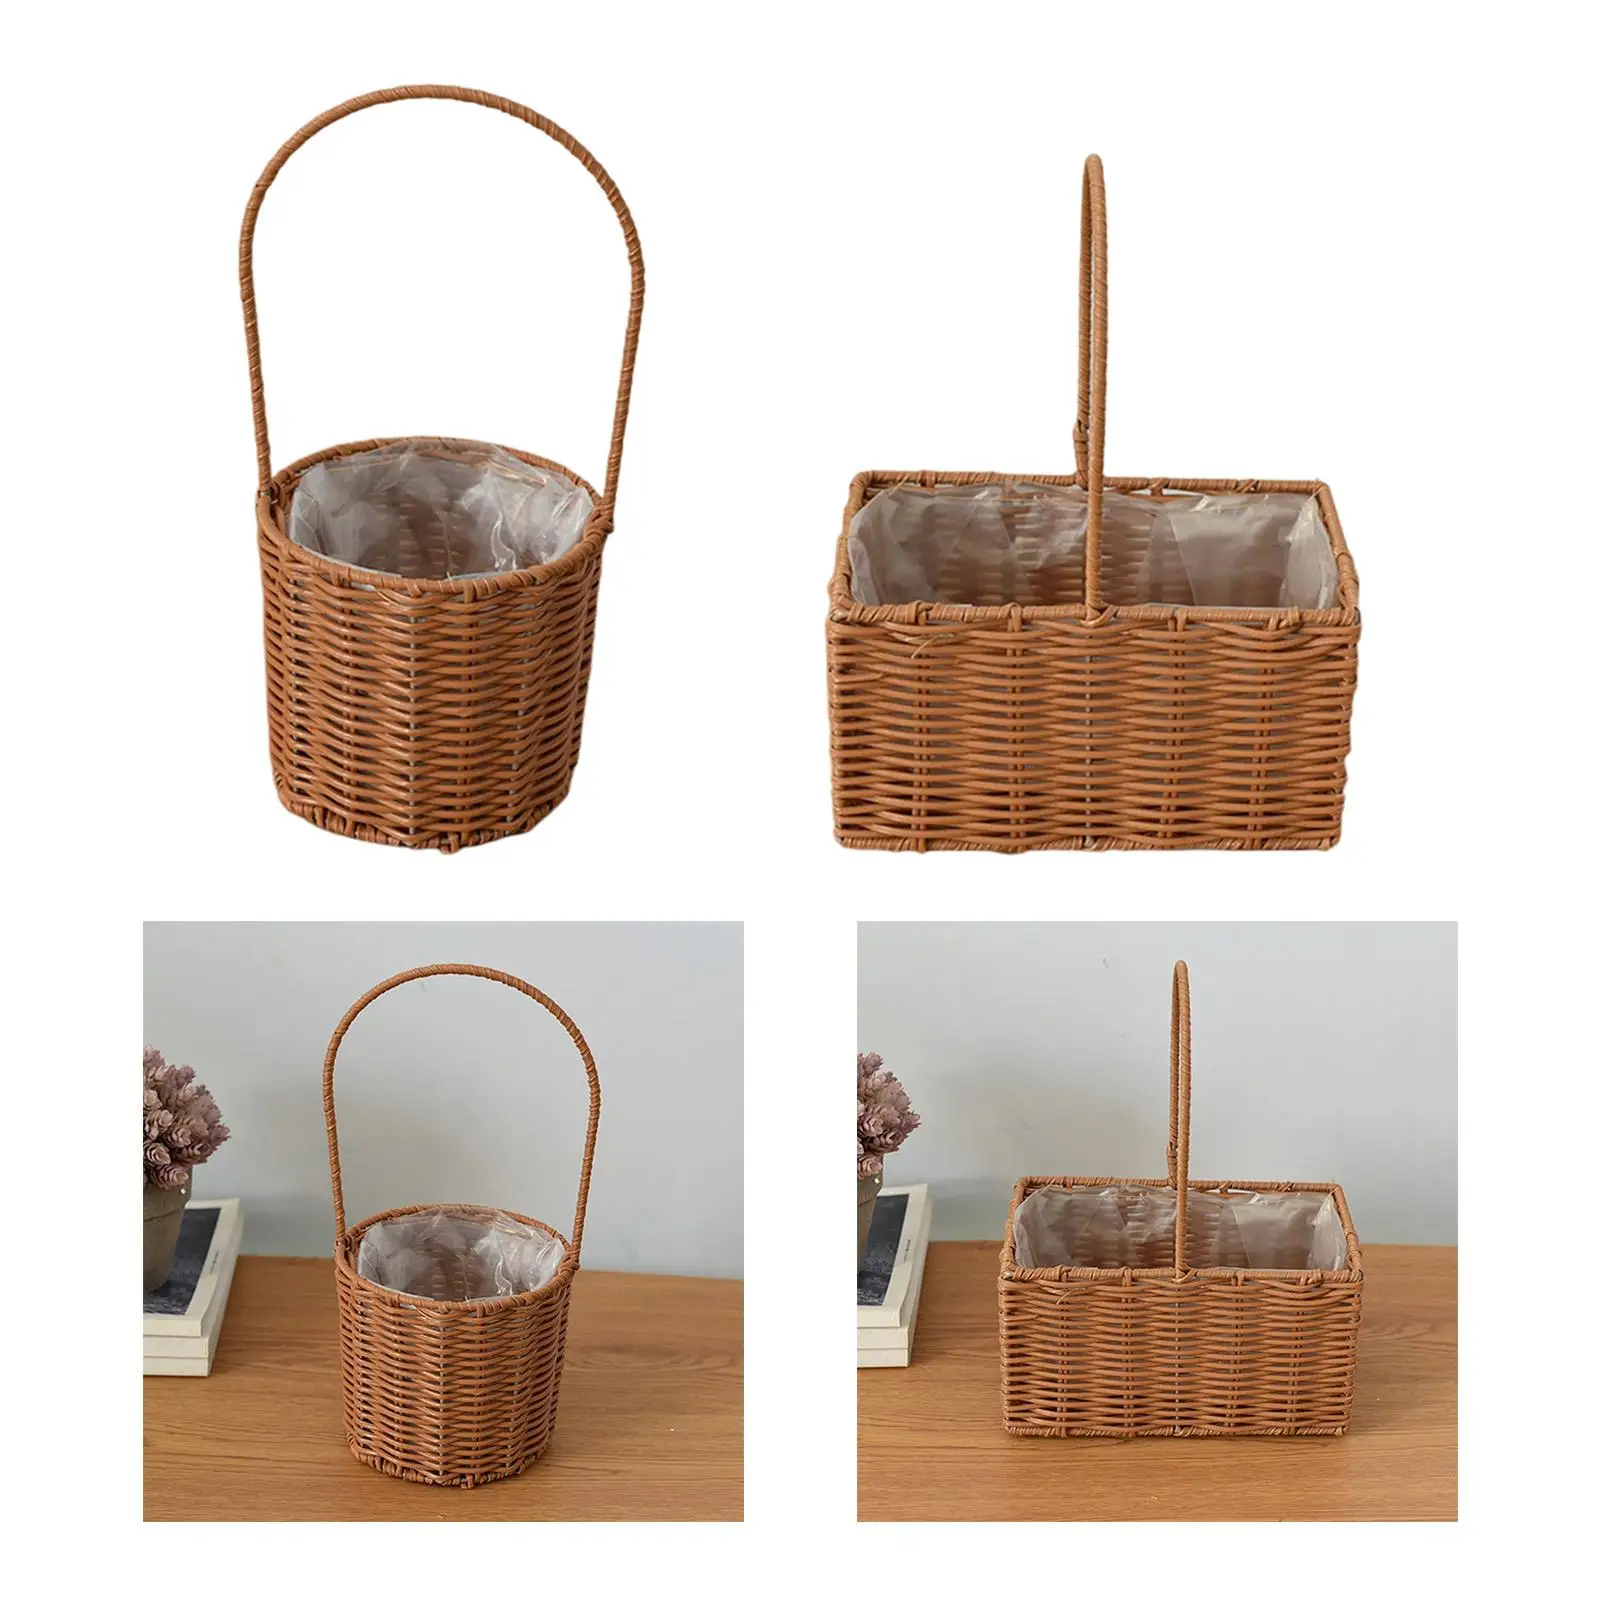 Rattan Flower Basket Vegetables Fruits Holder with Handle Handmade Wicker Basket for Living Room Home Decor